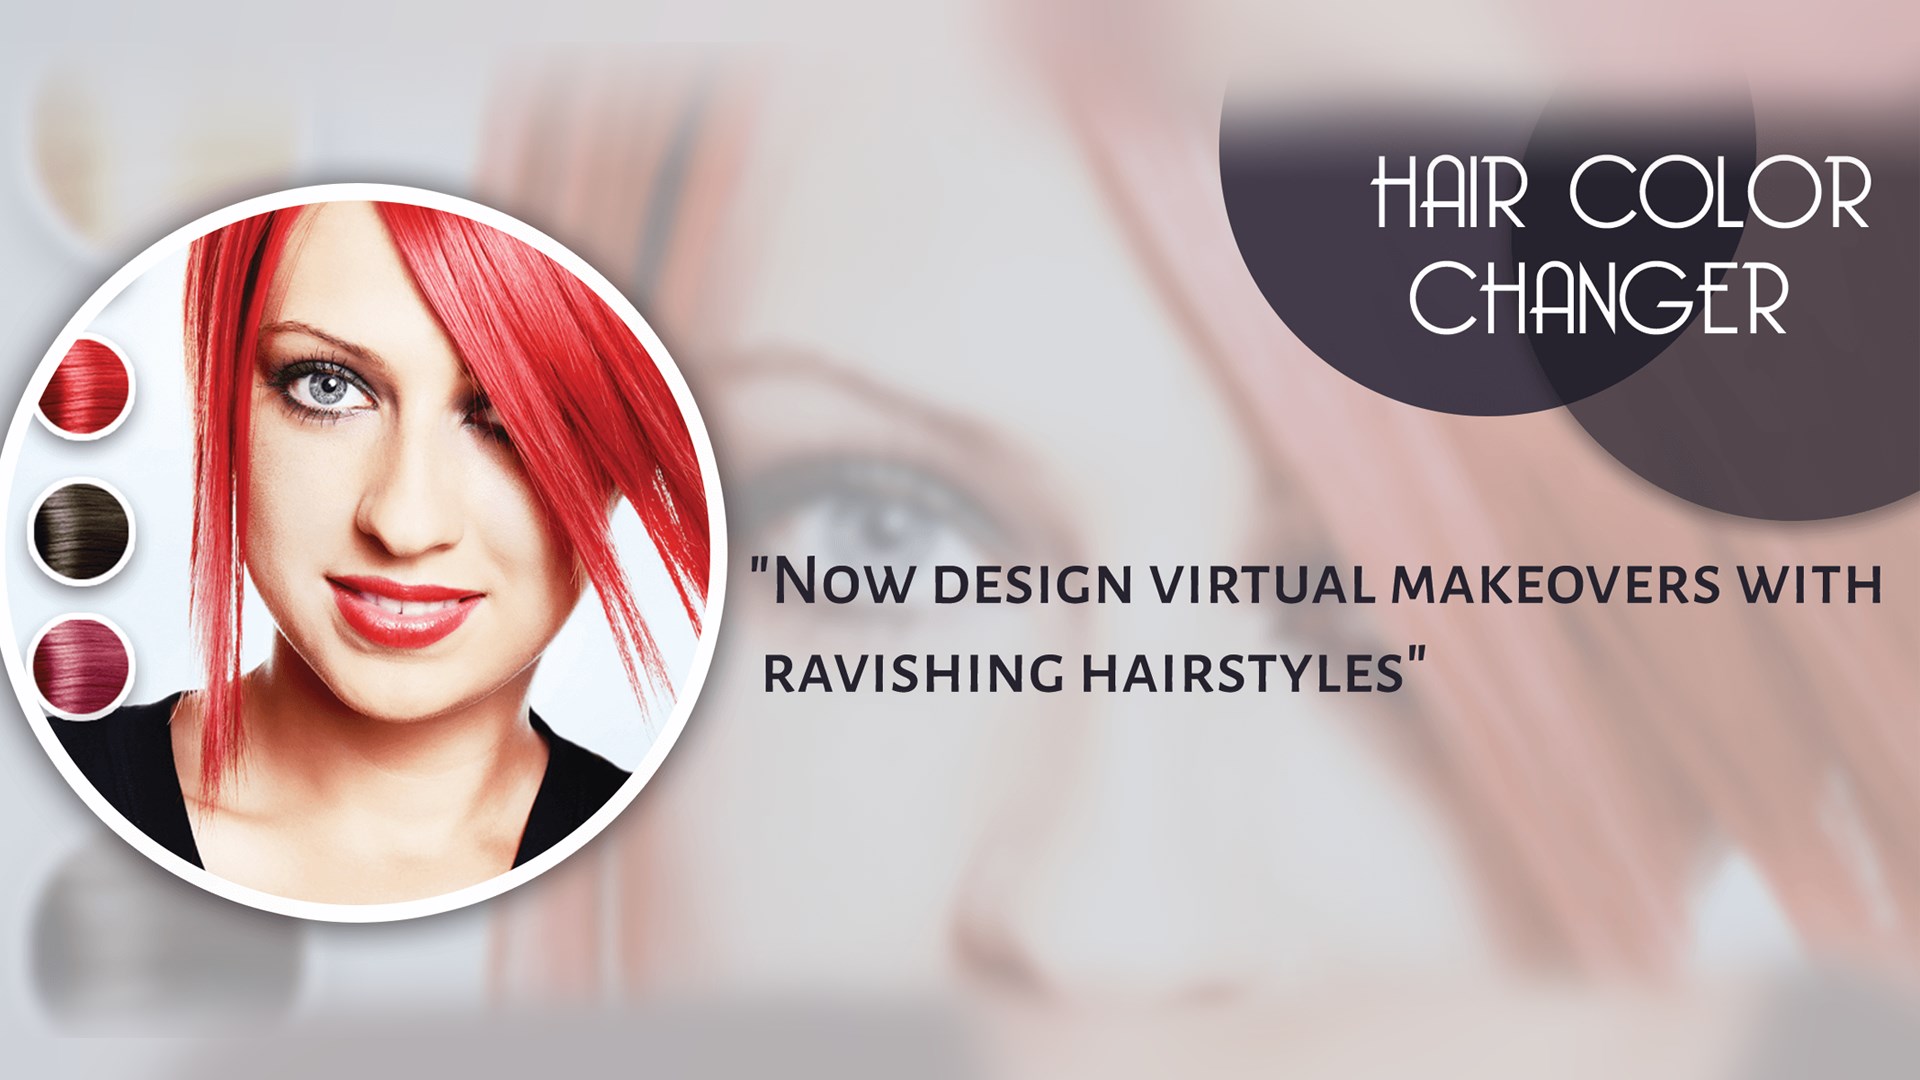 Hair color change. Визитка окрашивание волос. Покрасить волосы виртуально.